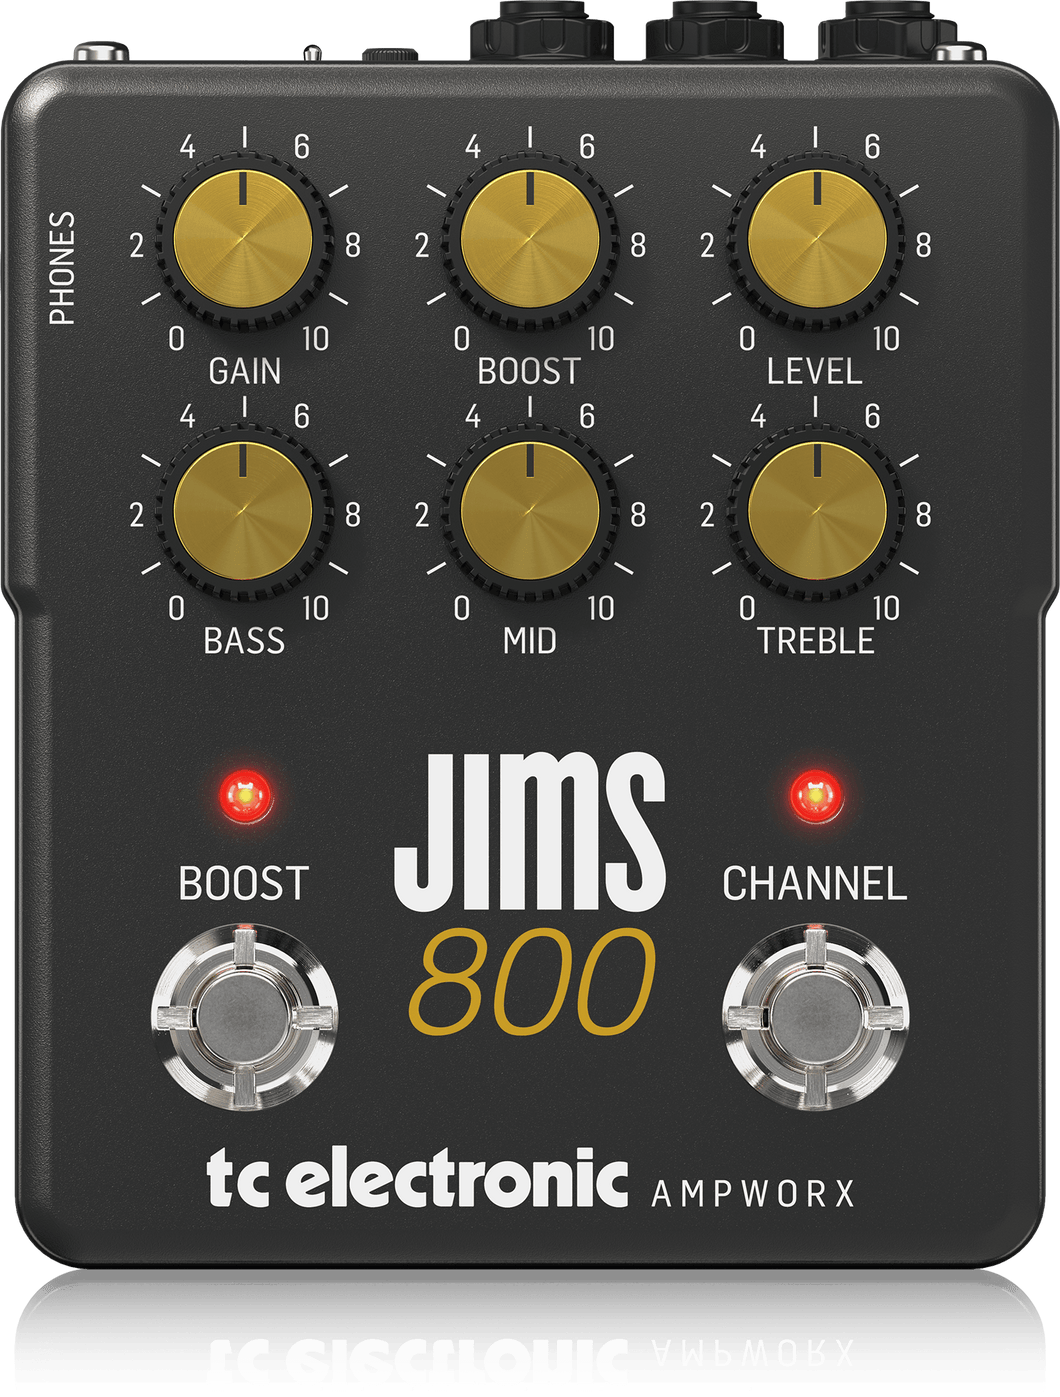 JIMS 800 Preamp